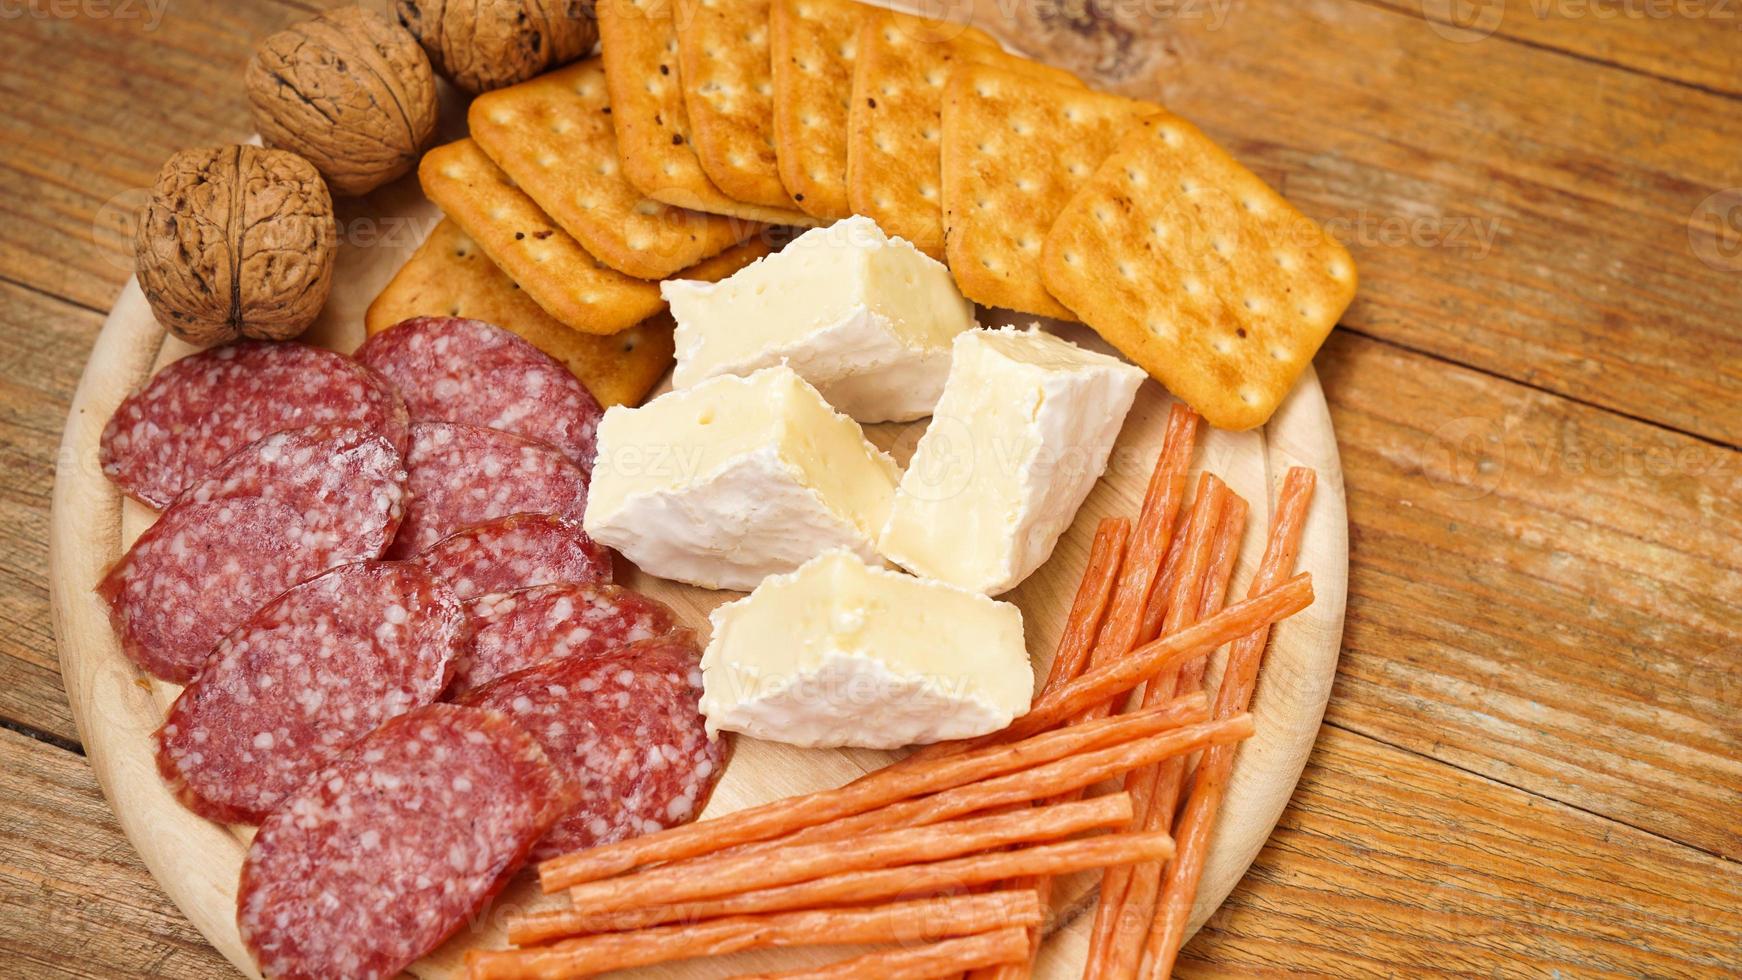 Fleisch- und Käseplatte für Vorspeisen. Wurst, Käse, Cracker, Nüsse auf Holz foto